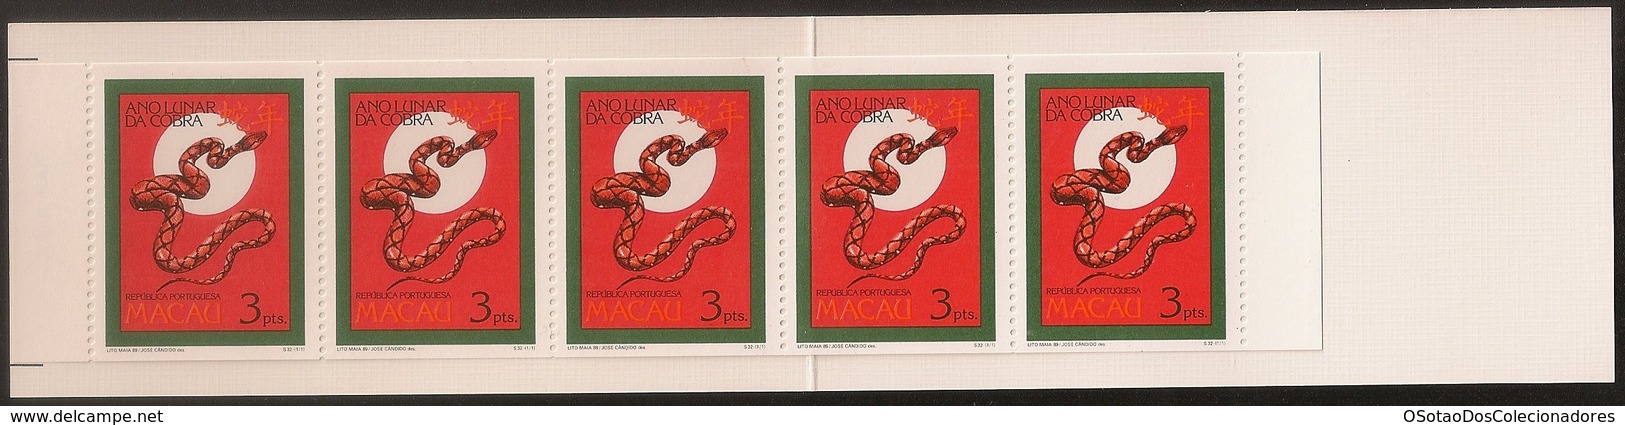 Macau Macao Chine Caderneta 1989 - Ano Lunar Da Cobra - Chinese New Year - Year Of The Snake - MNH/Neuf - Carnets